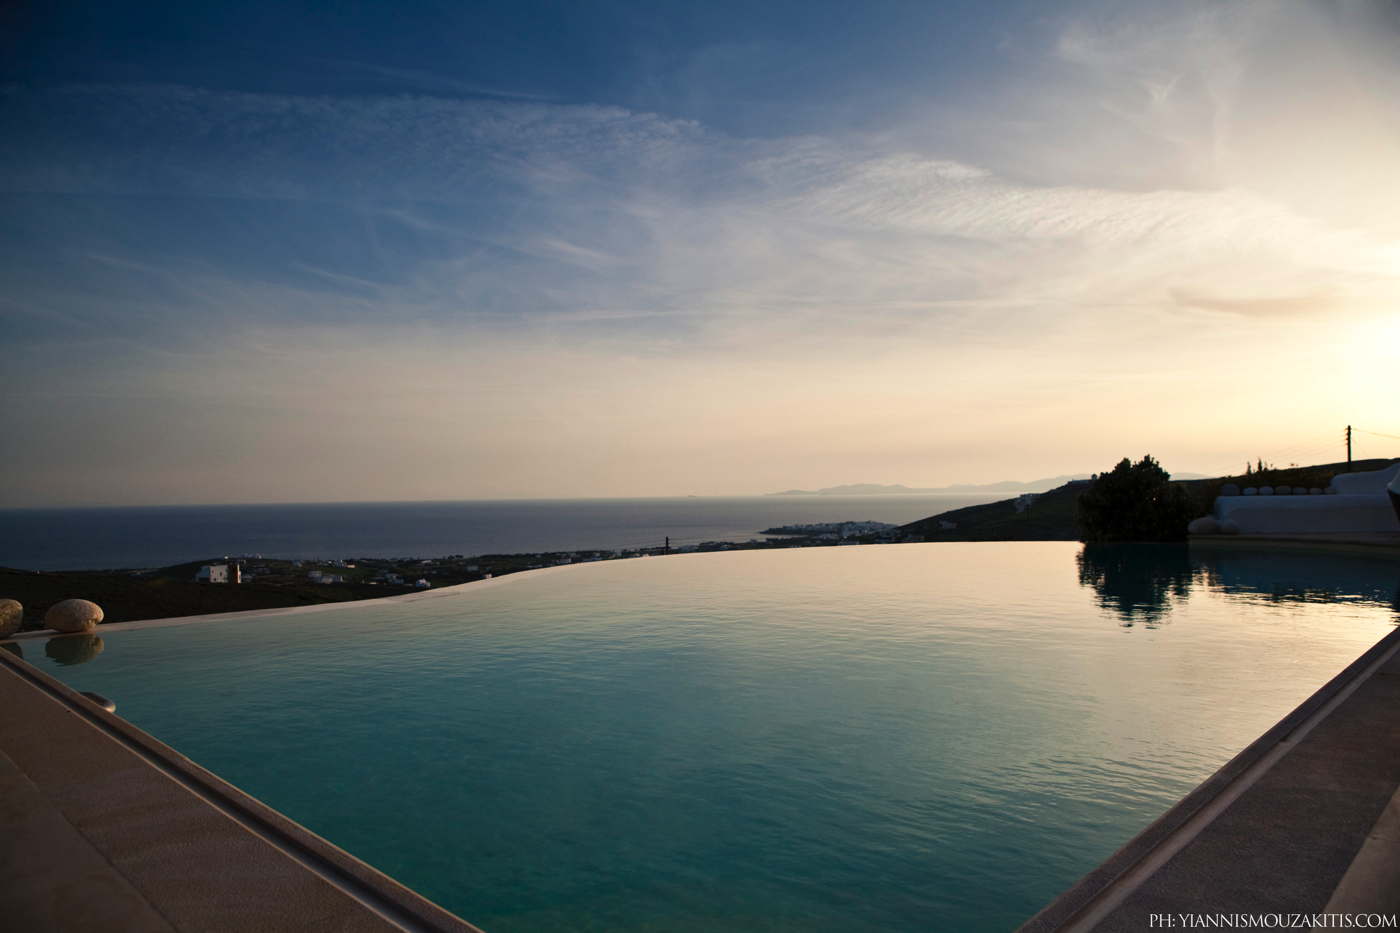 luxury villa-luxury holiday home-vacation villa in Greece-Cyclades-Tinos-Triandaros